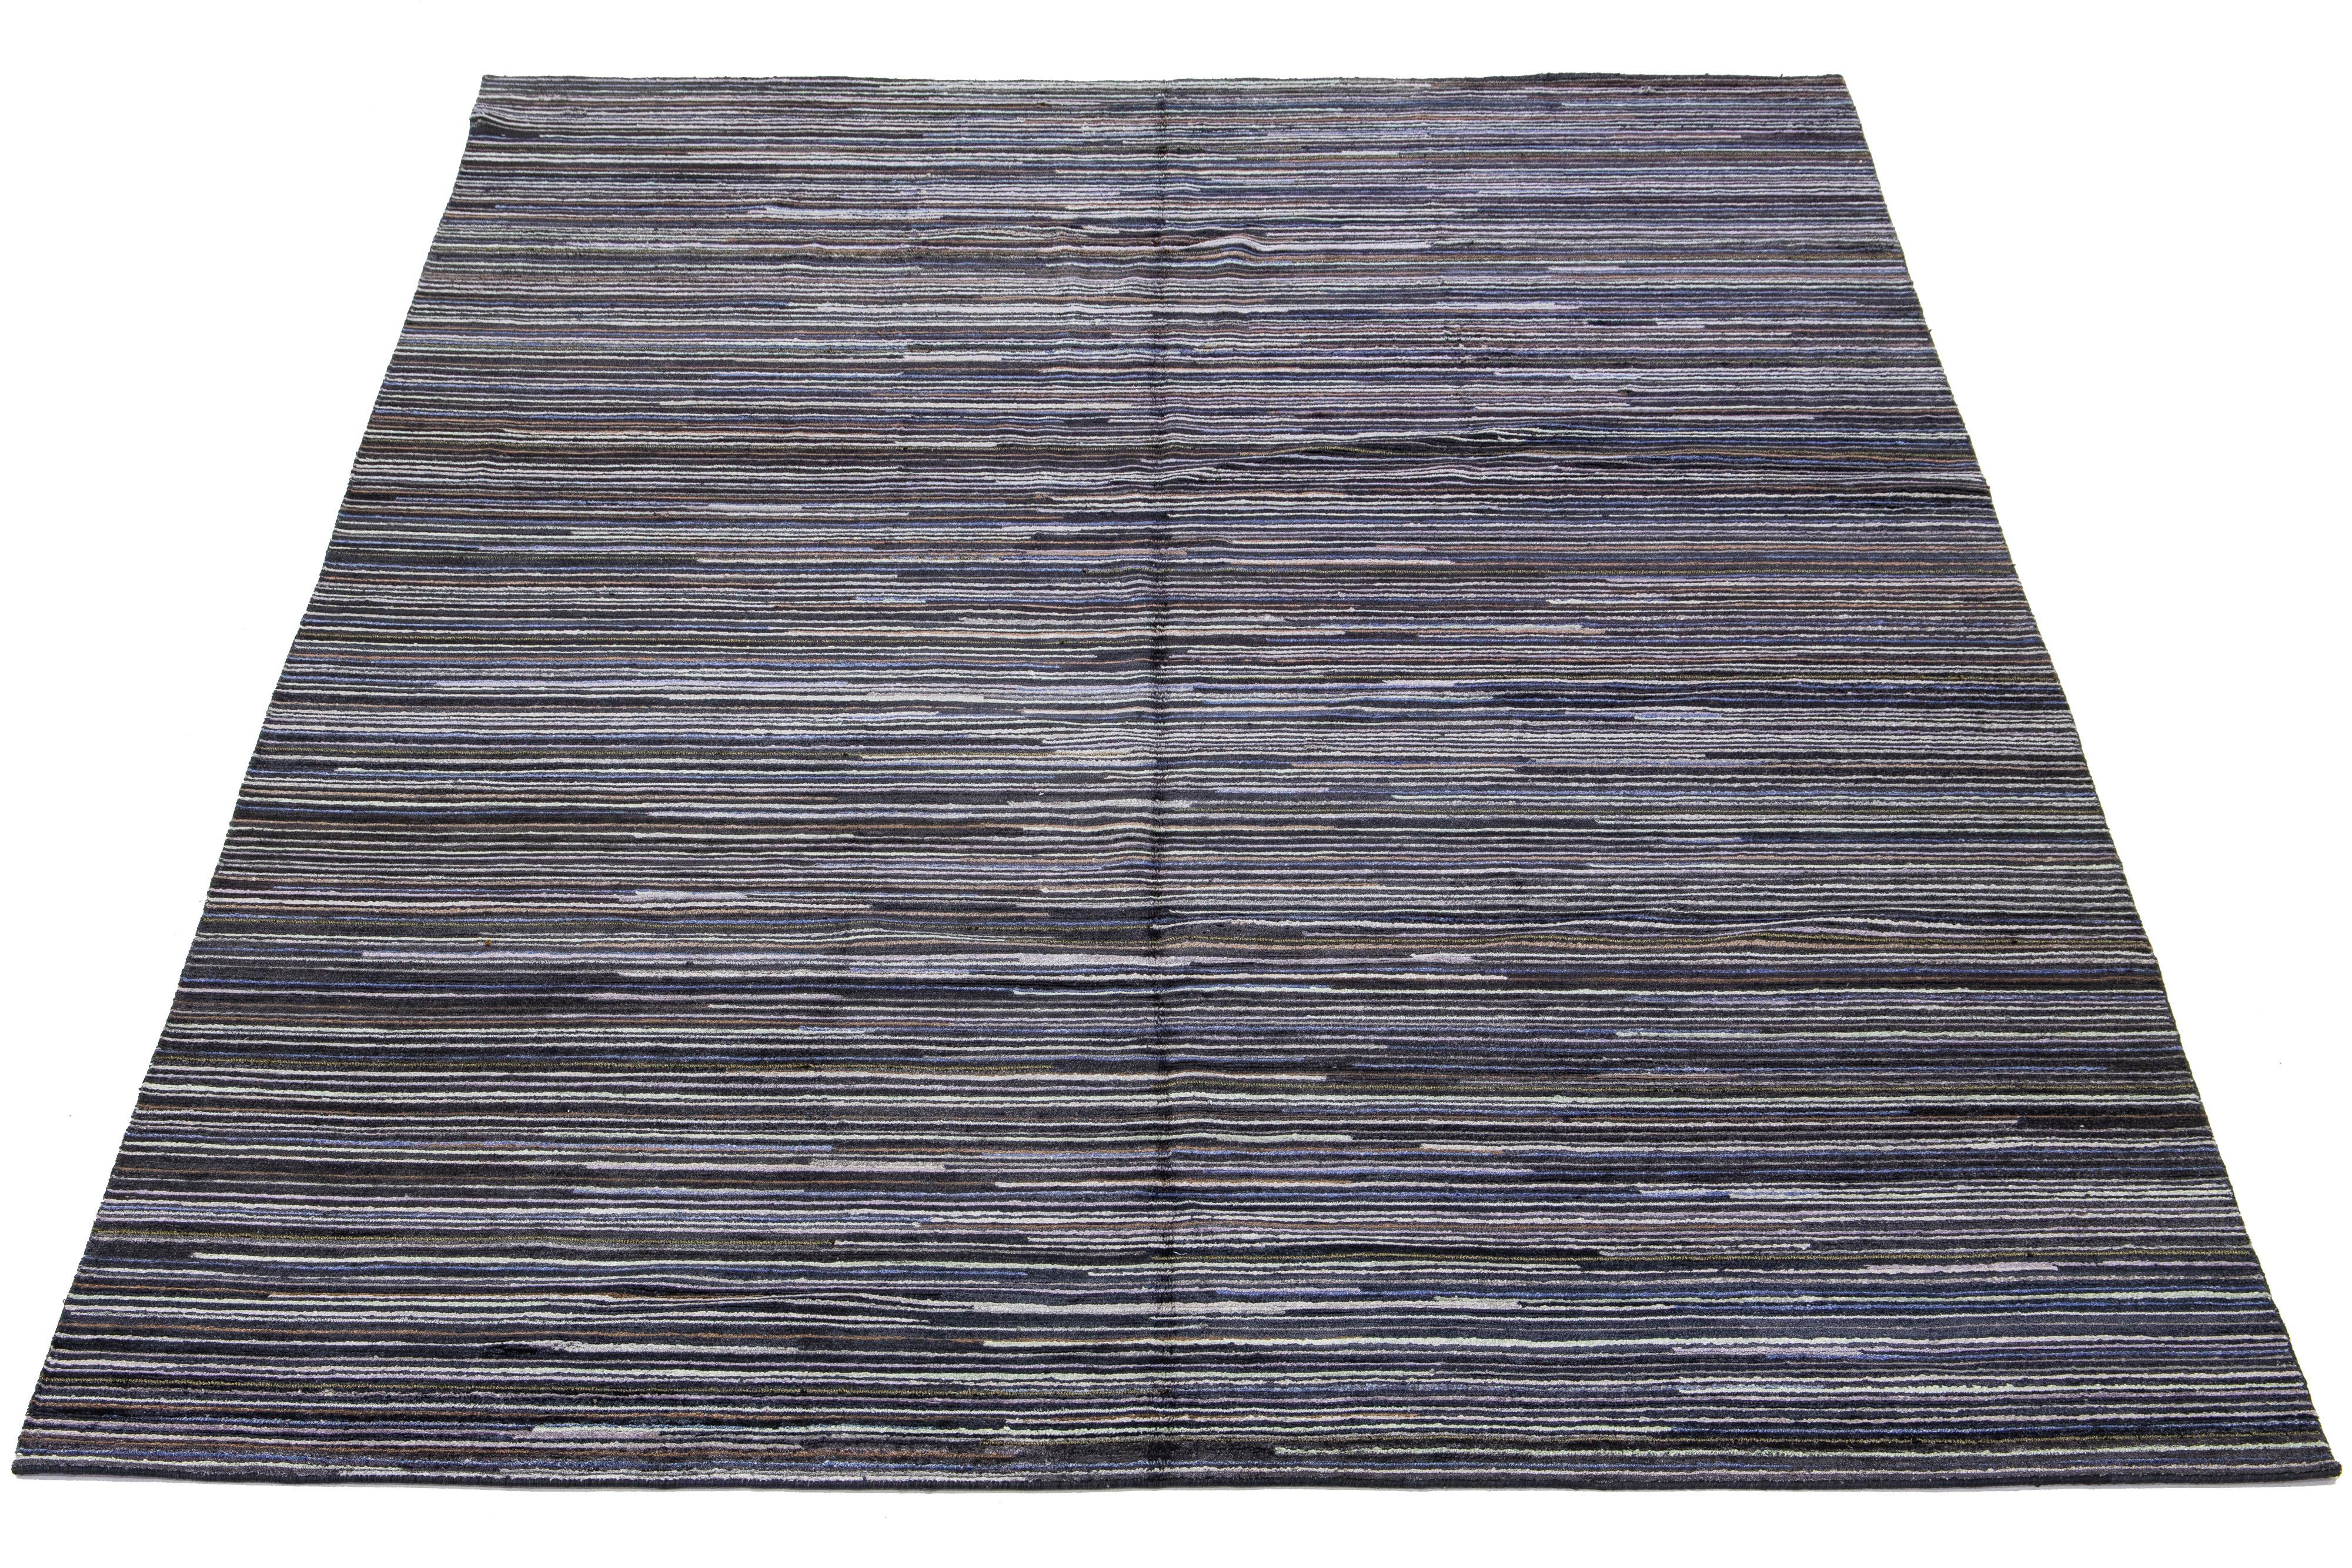 Dieser handgeknüpfte indische Teppich besteht aus Wolle und besticht durch seine Streifenästhetik mit mehrfarbigen Akzenten. Der Hintergrund ist in natürlichen Grau- und Schwarztönen gehalten.

Dieser Teppich misst 10' x 14'4